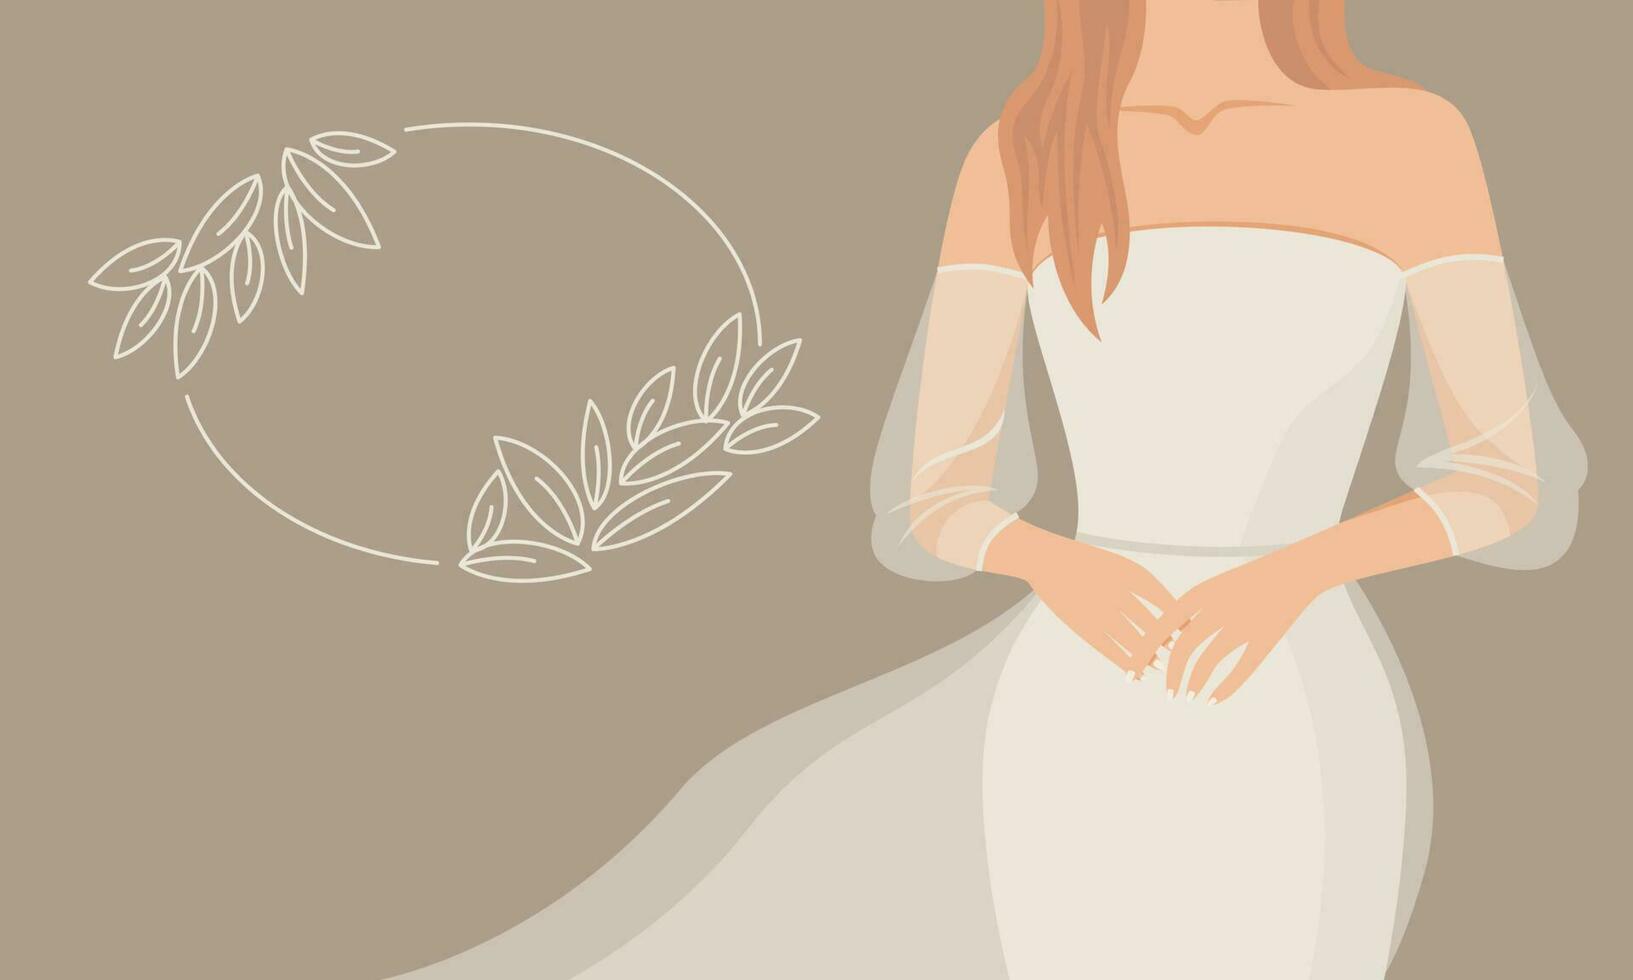 abstrato lindo mulher dentro uma delicado Casamento vestir. decorativo quadro, Armação para texto a partir de folhas. conceito do Casamento salão. vetor simples ilustração.